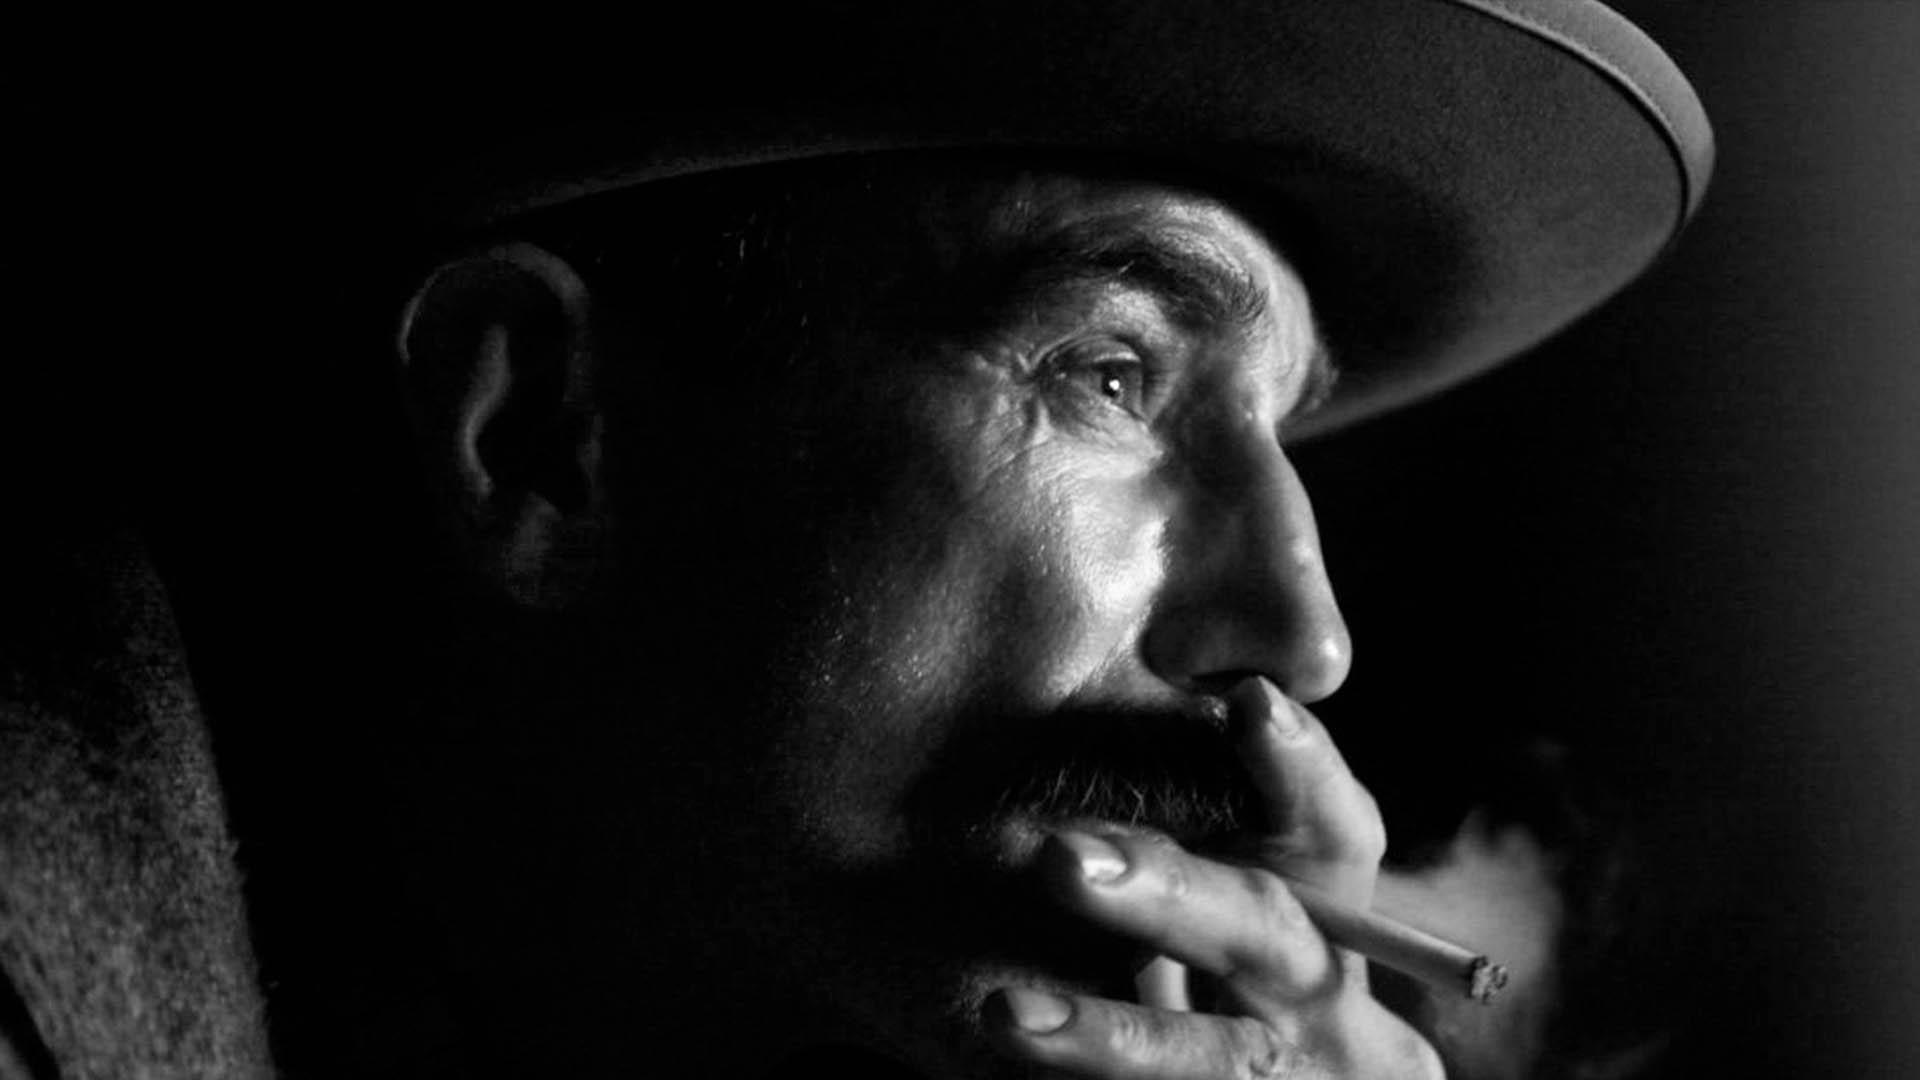 دنیل دی لوئیس درحال سیگار کشیدن در فیلم there will be blood